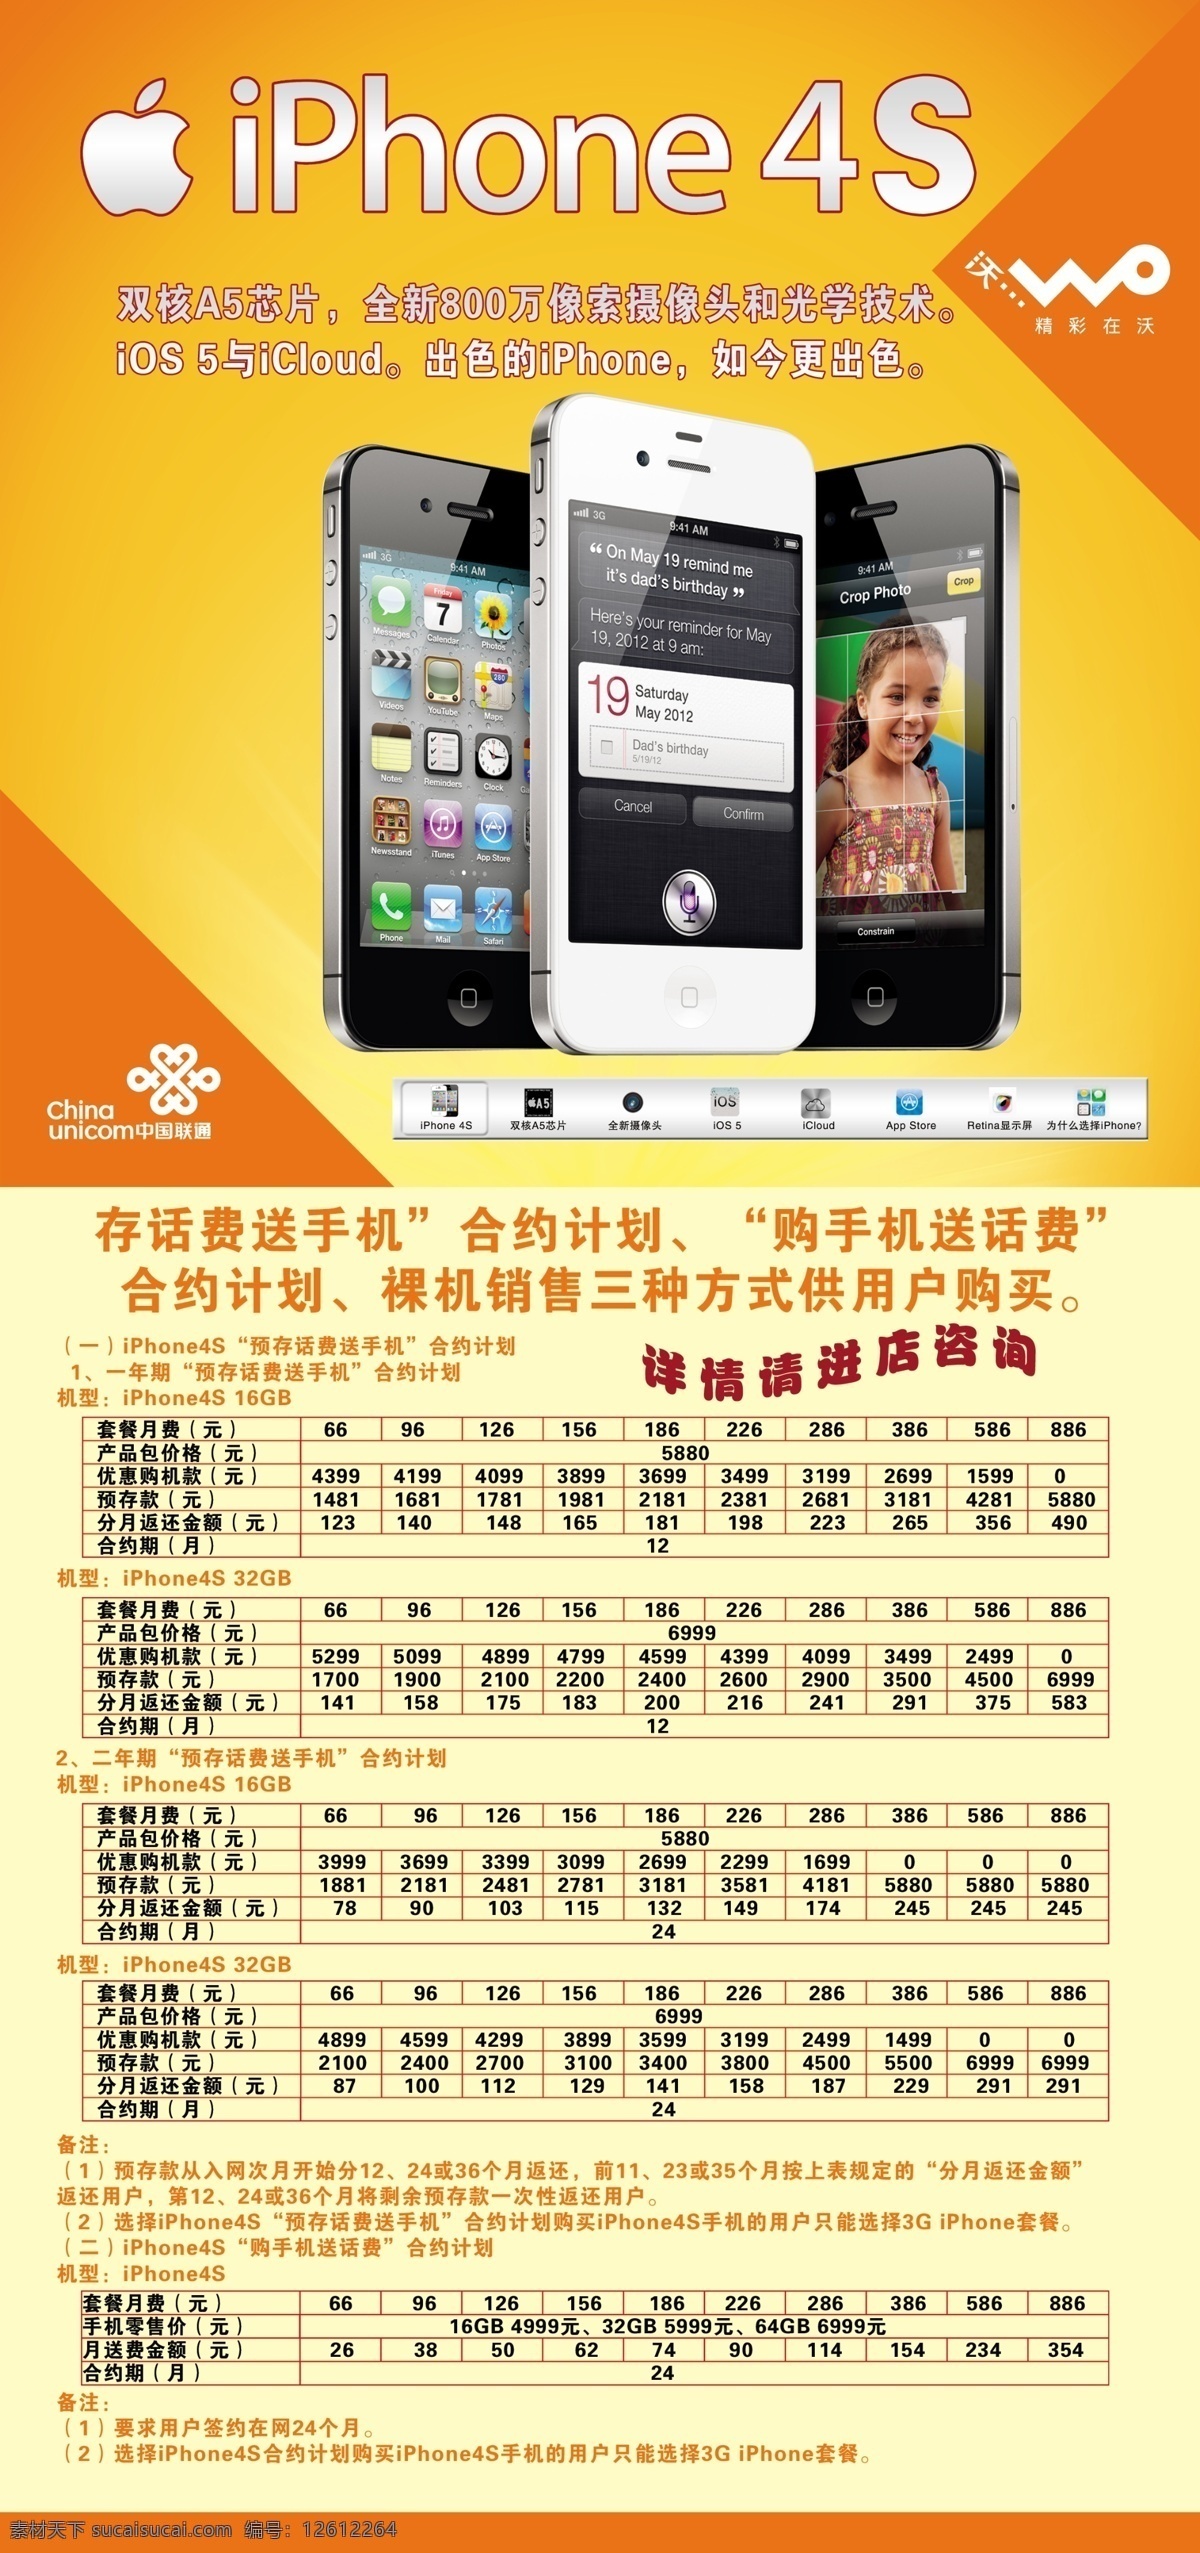 标志 广告设计模板 苹果手机 沃3g 源文件 中国联通 联通 iphone4s 资费 其他海报设计